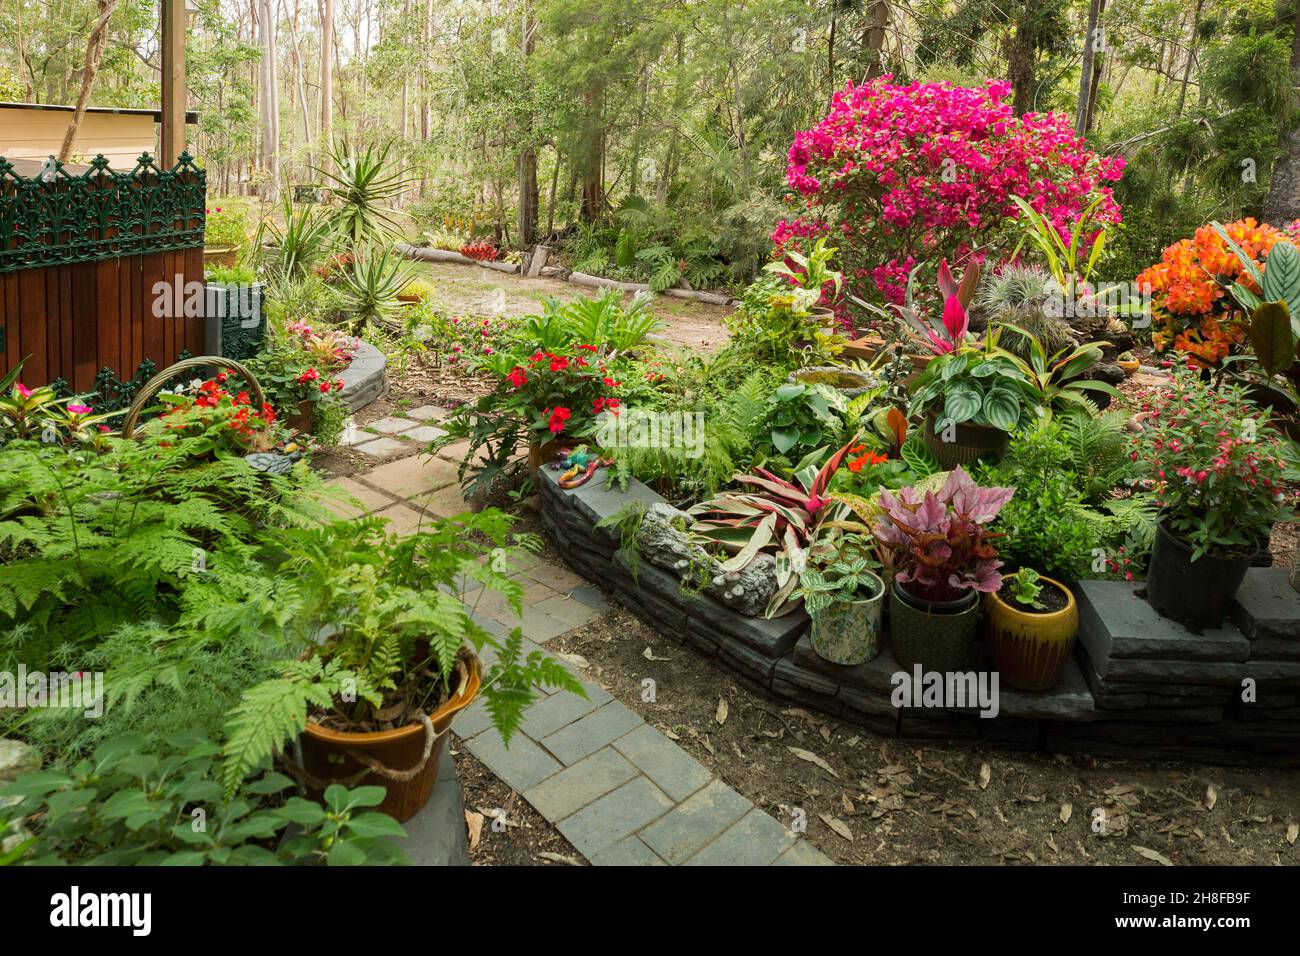 Spectaculaire jardin tropical coloré avec fougères luxuriantes et plantes à fleurs, beaucoup dans des conteneurs, avec mur bas et chemin, en Australie Banque D'Images